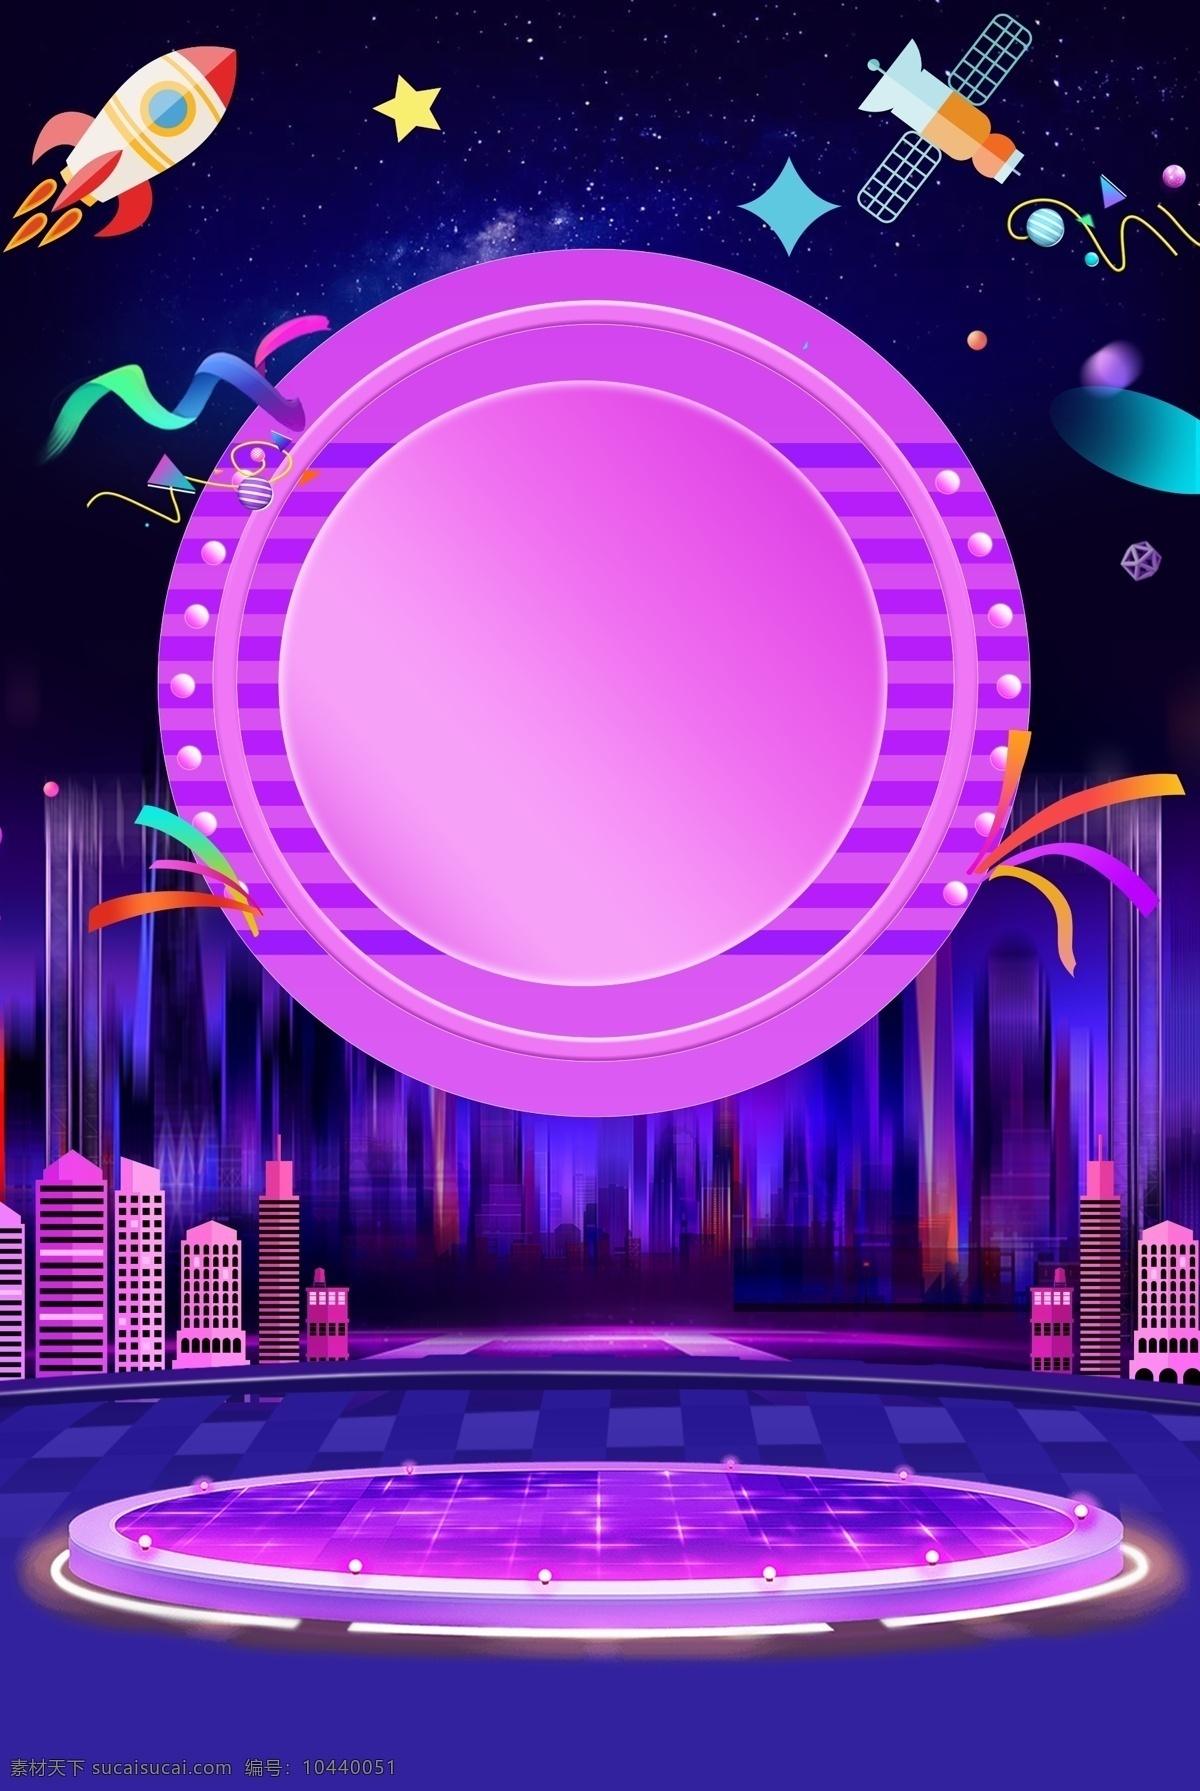 酷 炫 紫色 舞台 城市 建筑 海报 酷炫 紫色渐变 城市建筑 美食 美妆 家电 电器 灯效 大气 科技感